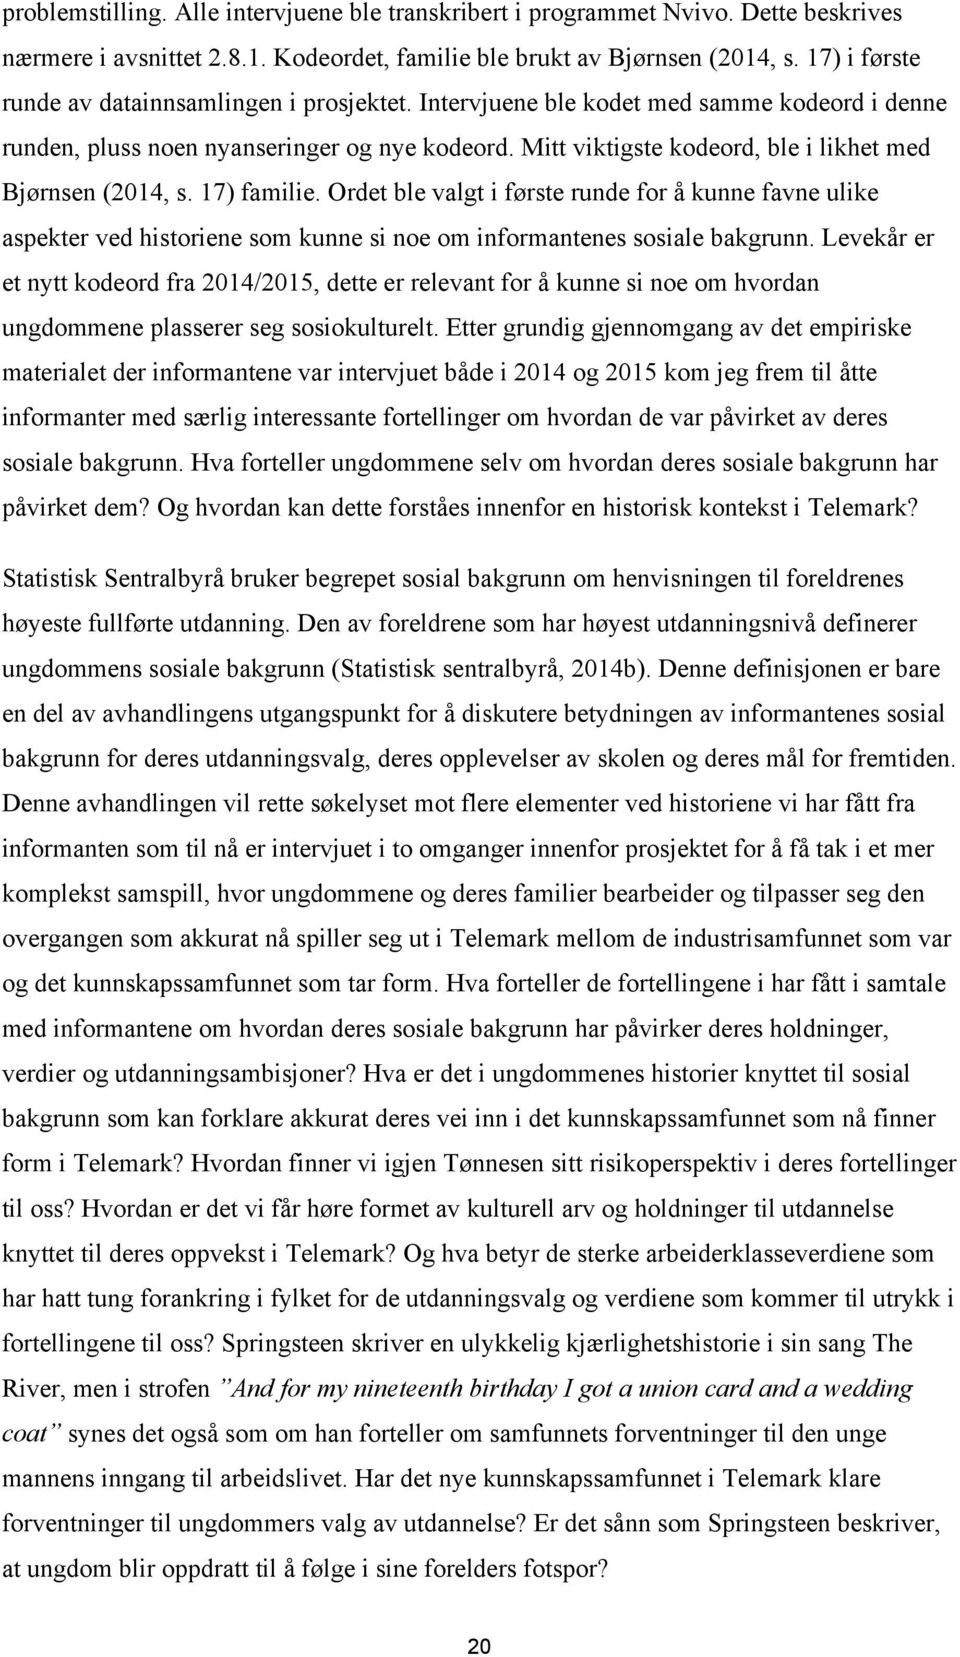 Mitt viktigste kodeord, ble i likhet med Bjørnsen (2014, s. 17) familie.